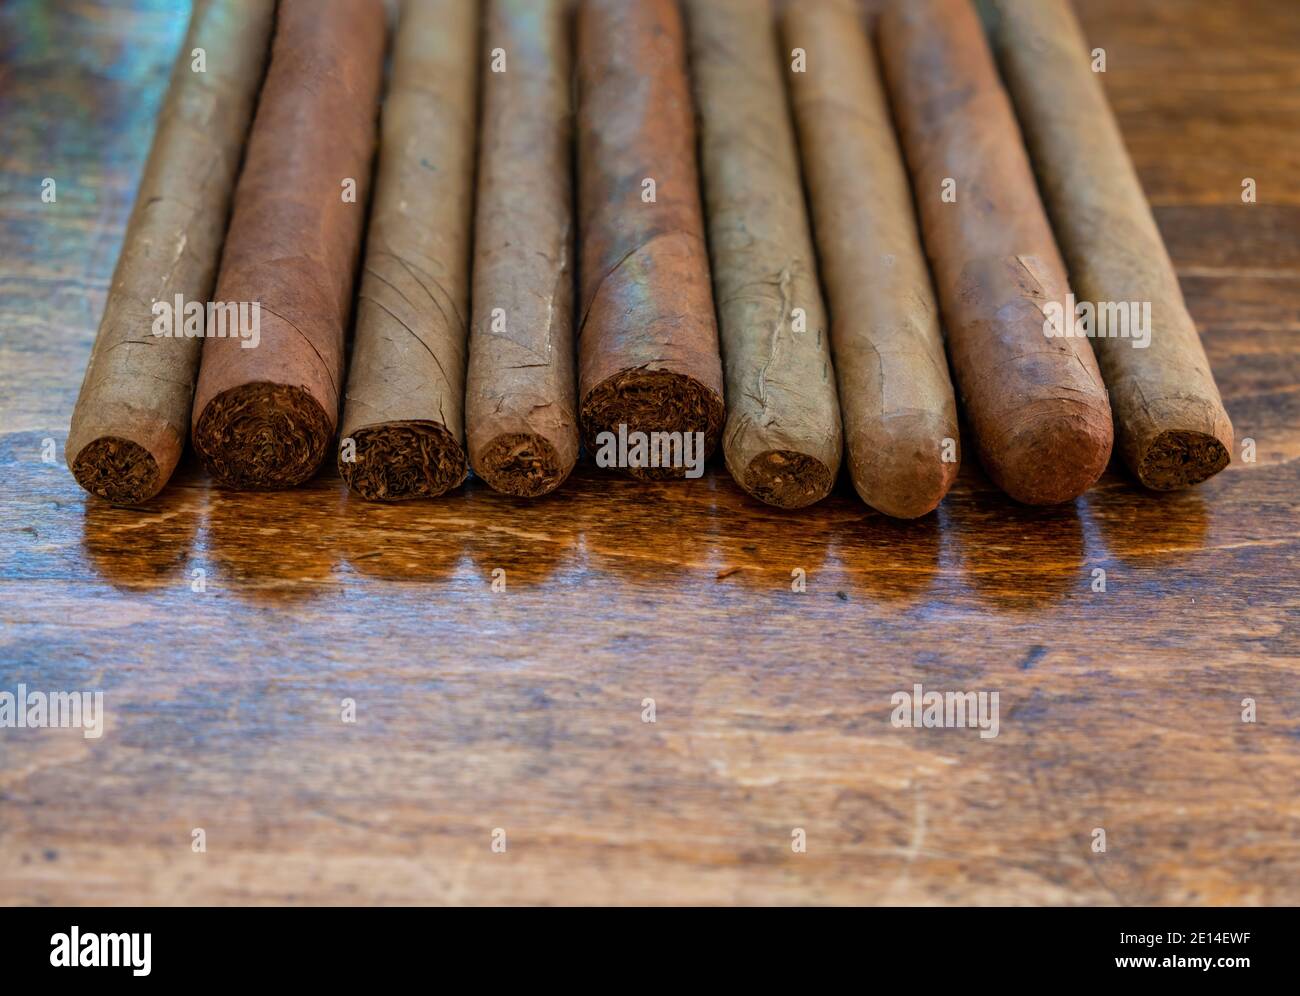 Zigarren auf einem Holztisch, Nahaufnahme. Kubanische Qualität handgemachte Zigarren Sortiment, Tabak rauchen Luxus Lifestyle. Stockfoto